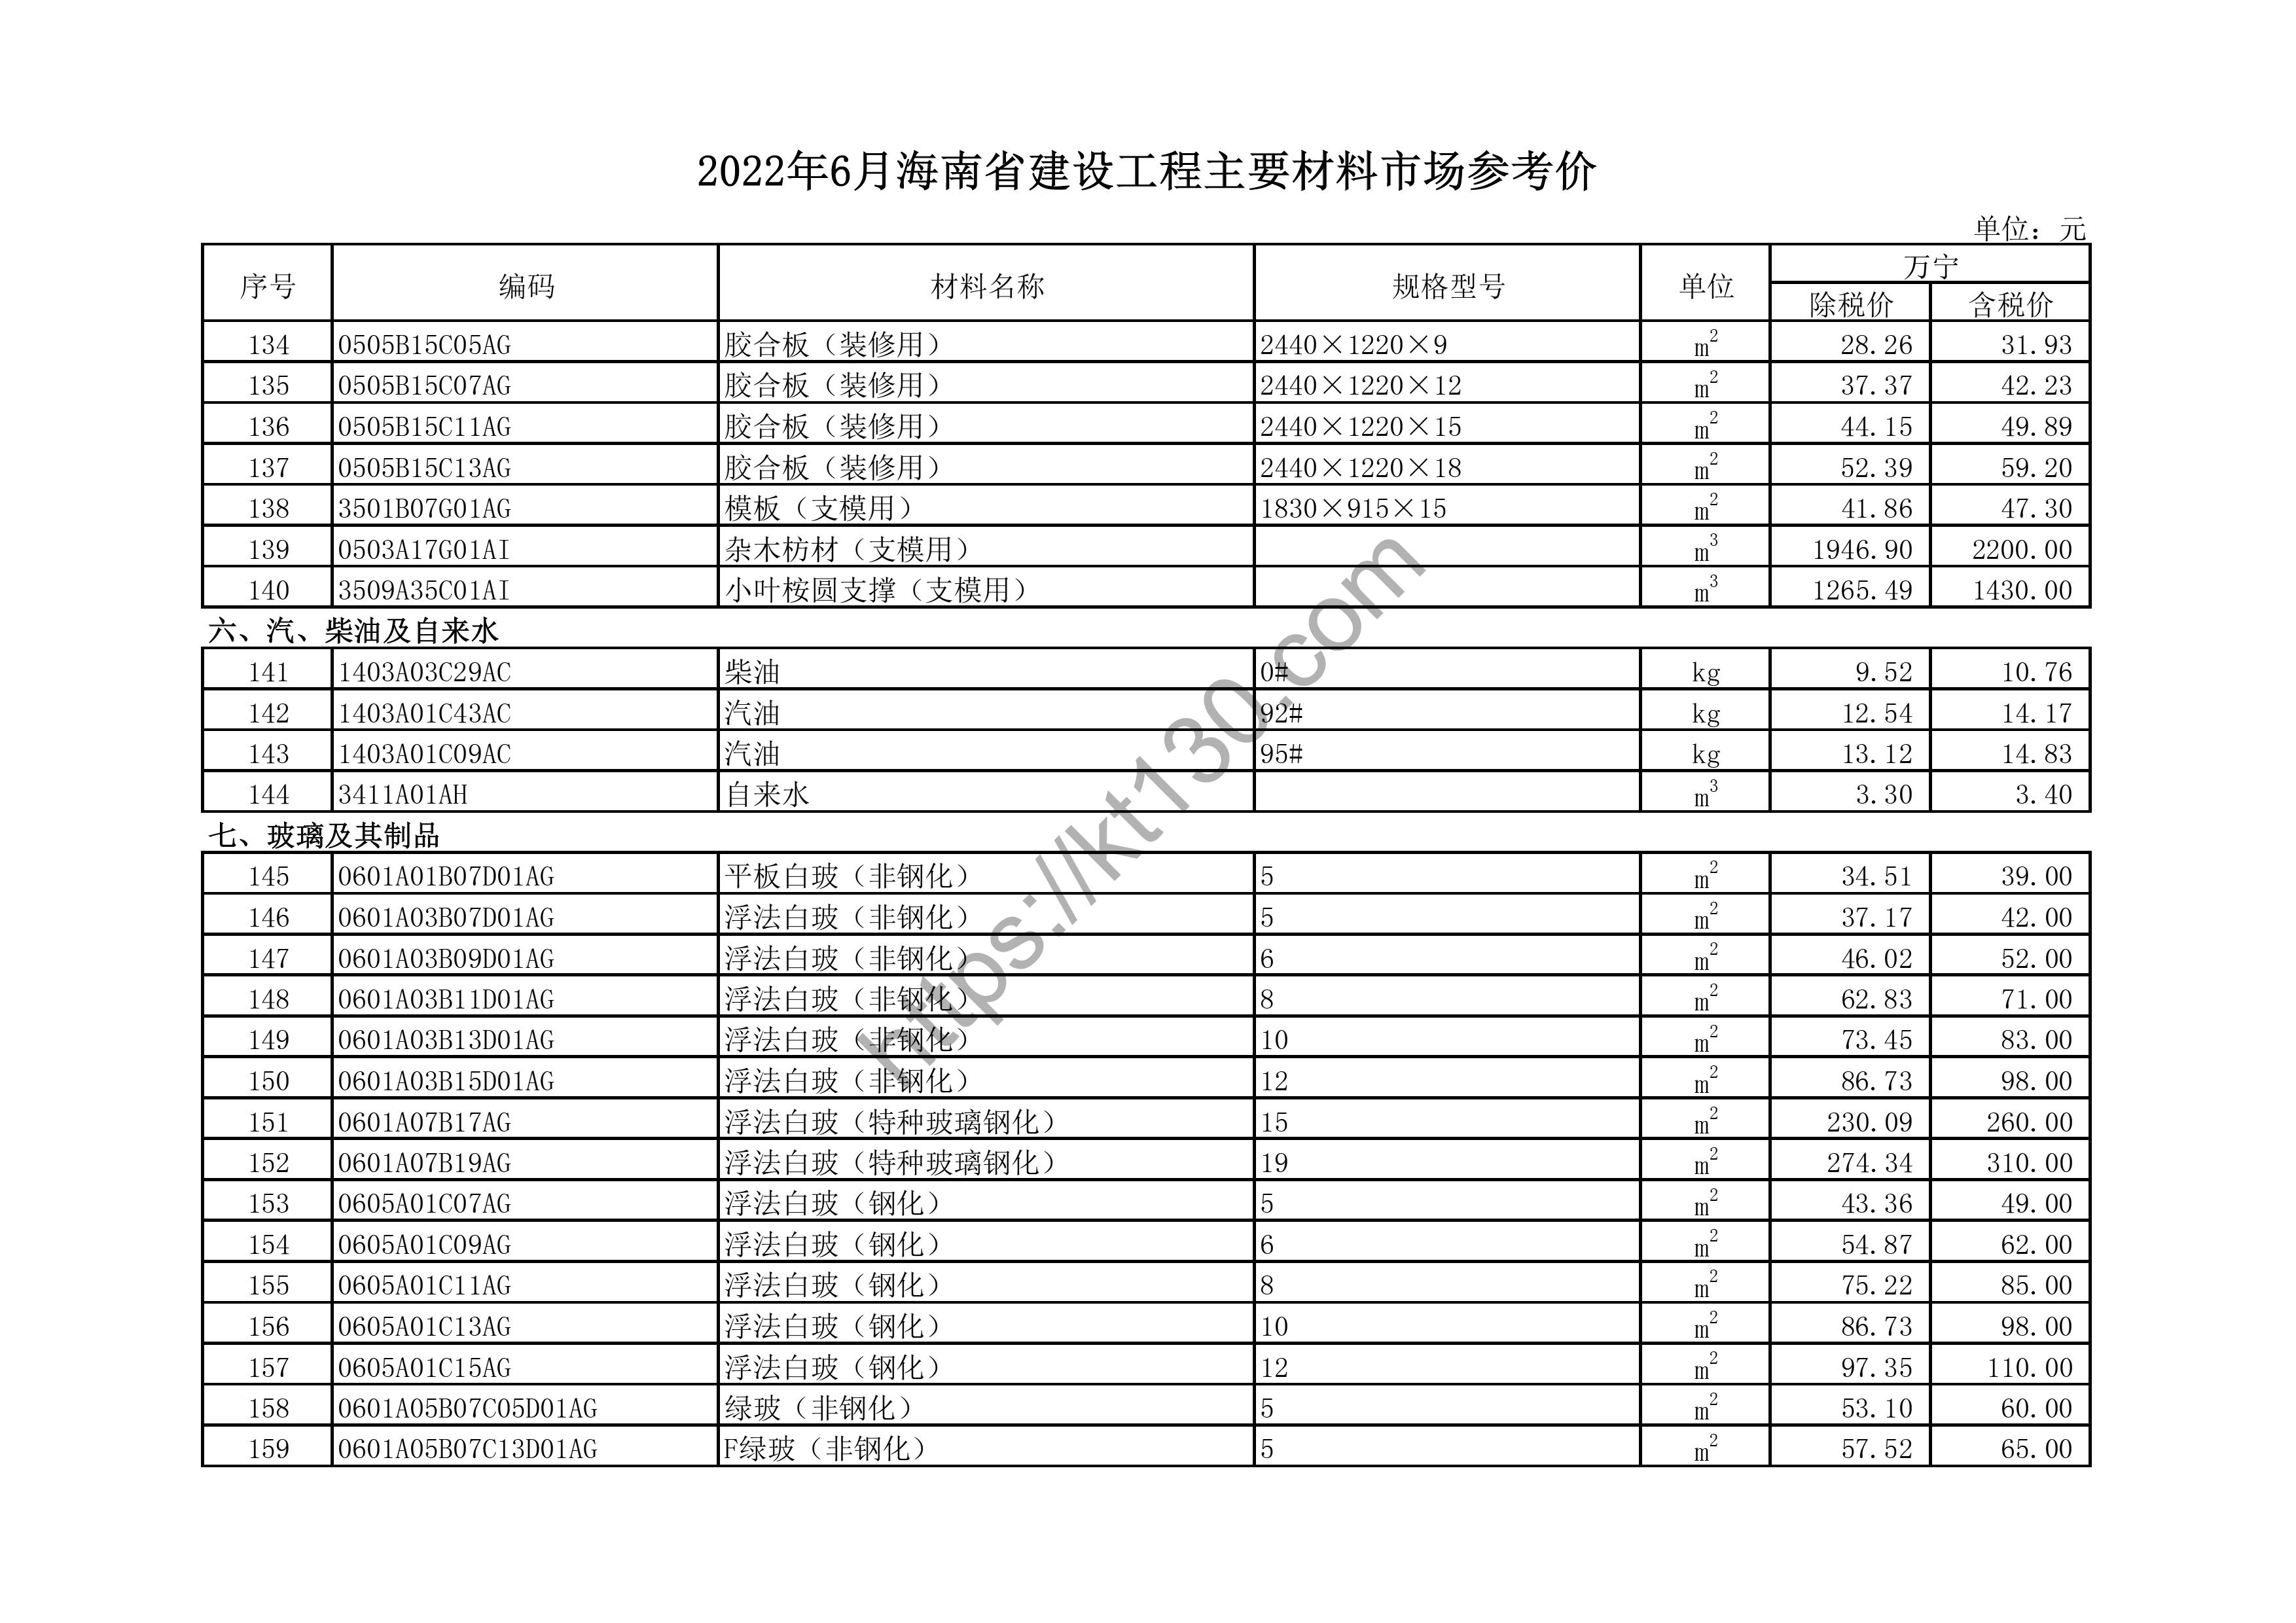 海南省2022年6月建筑材料价_中空玻璃（钢化）_44491